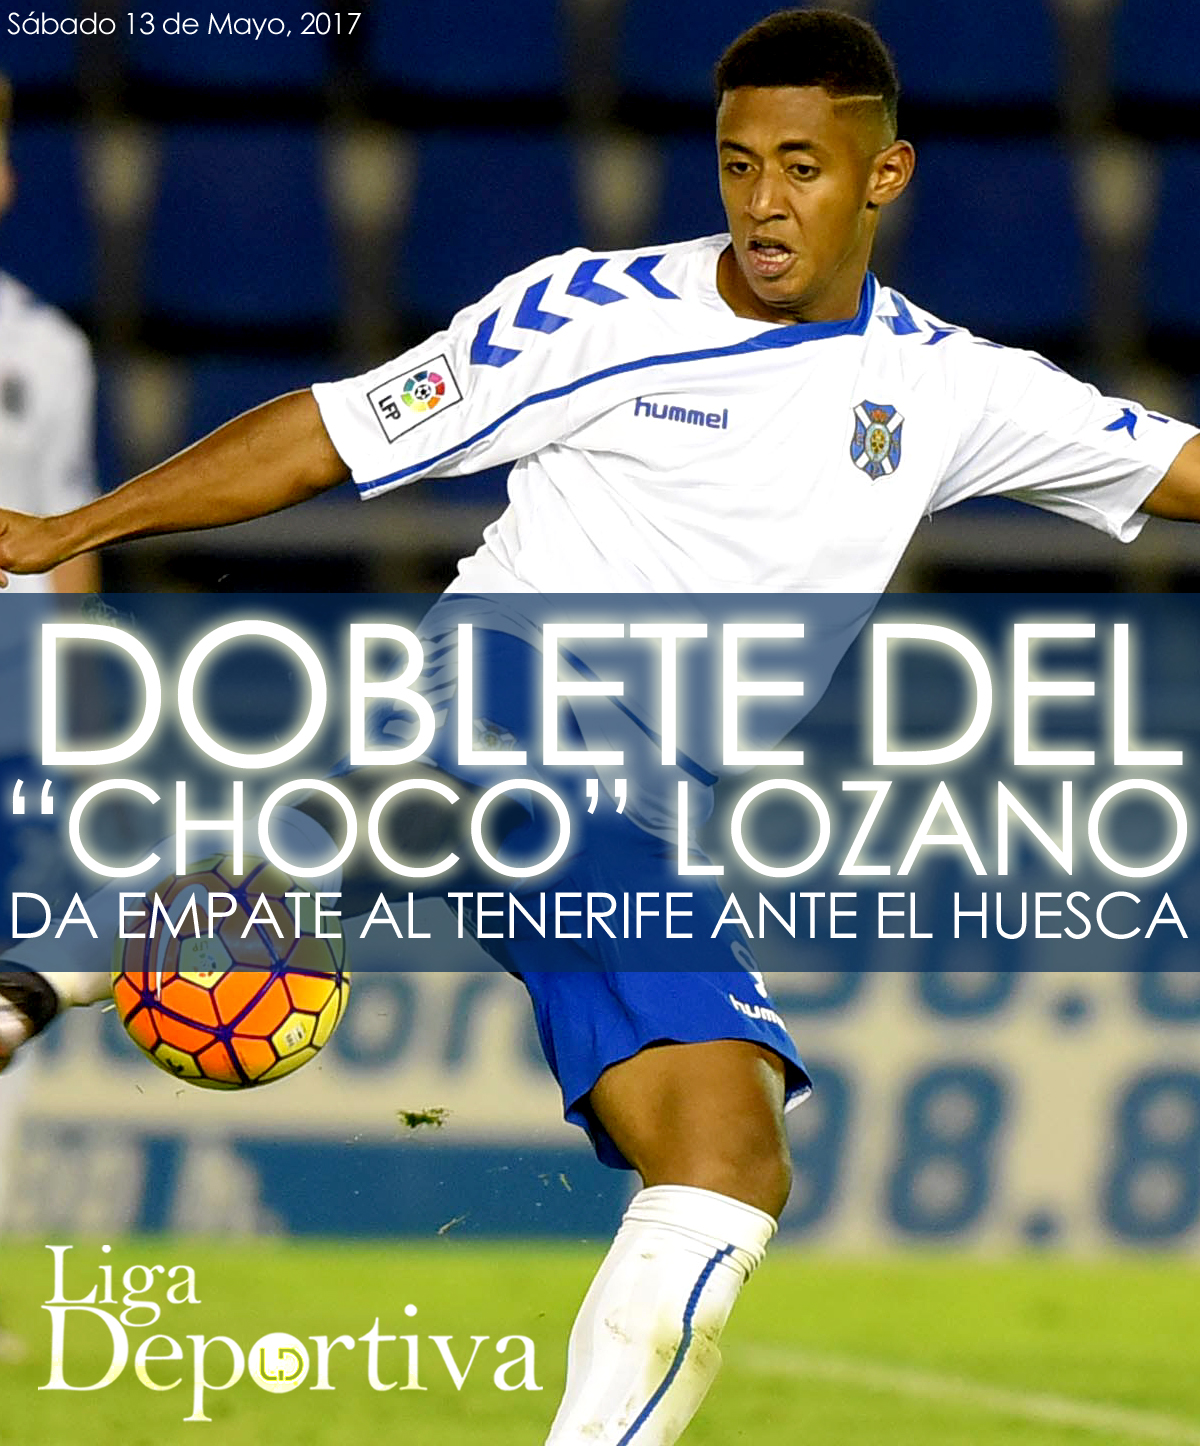 Doblete del "Choco" Lozano da el empate al Tenerife ante el Huesca 